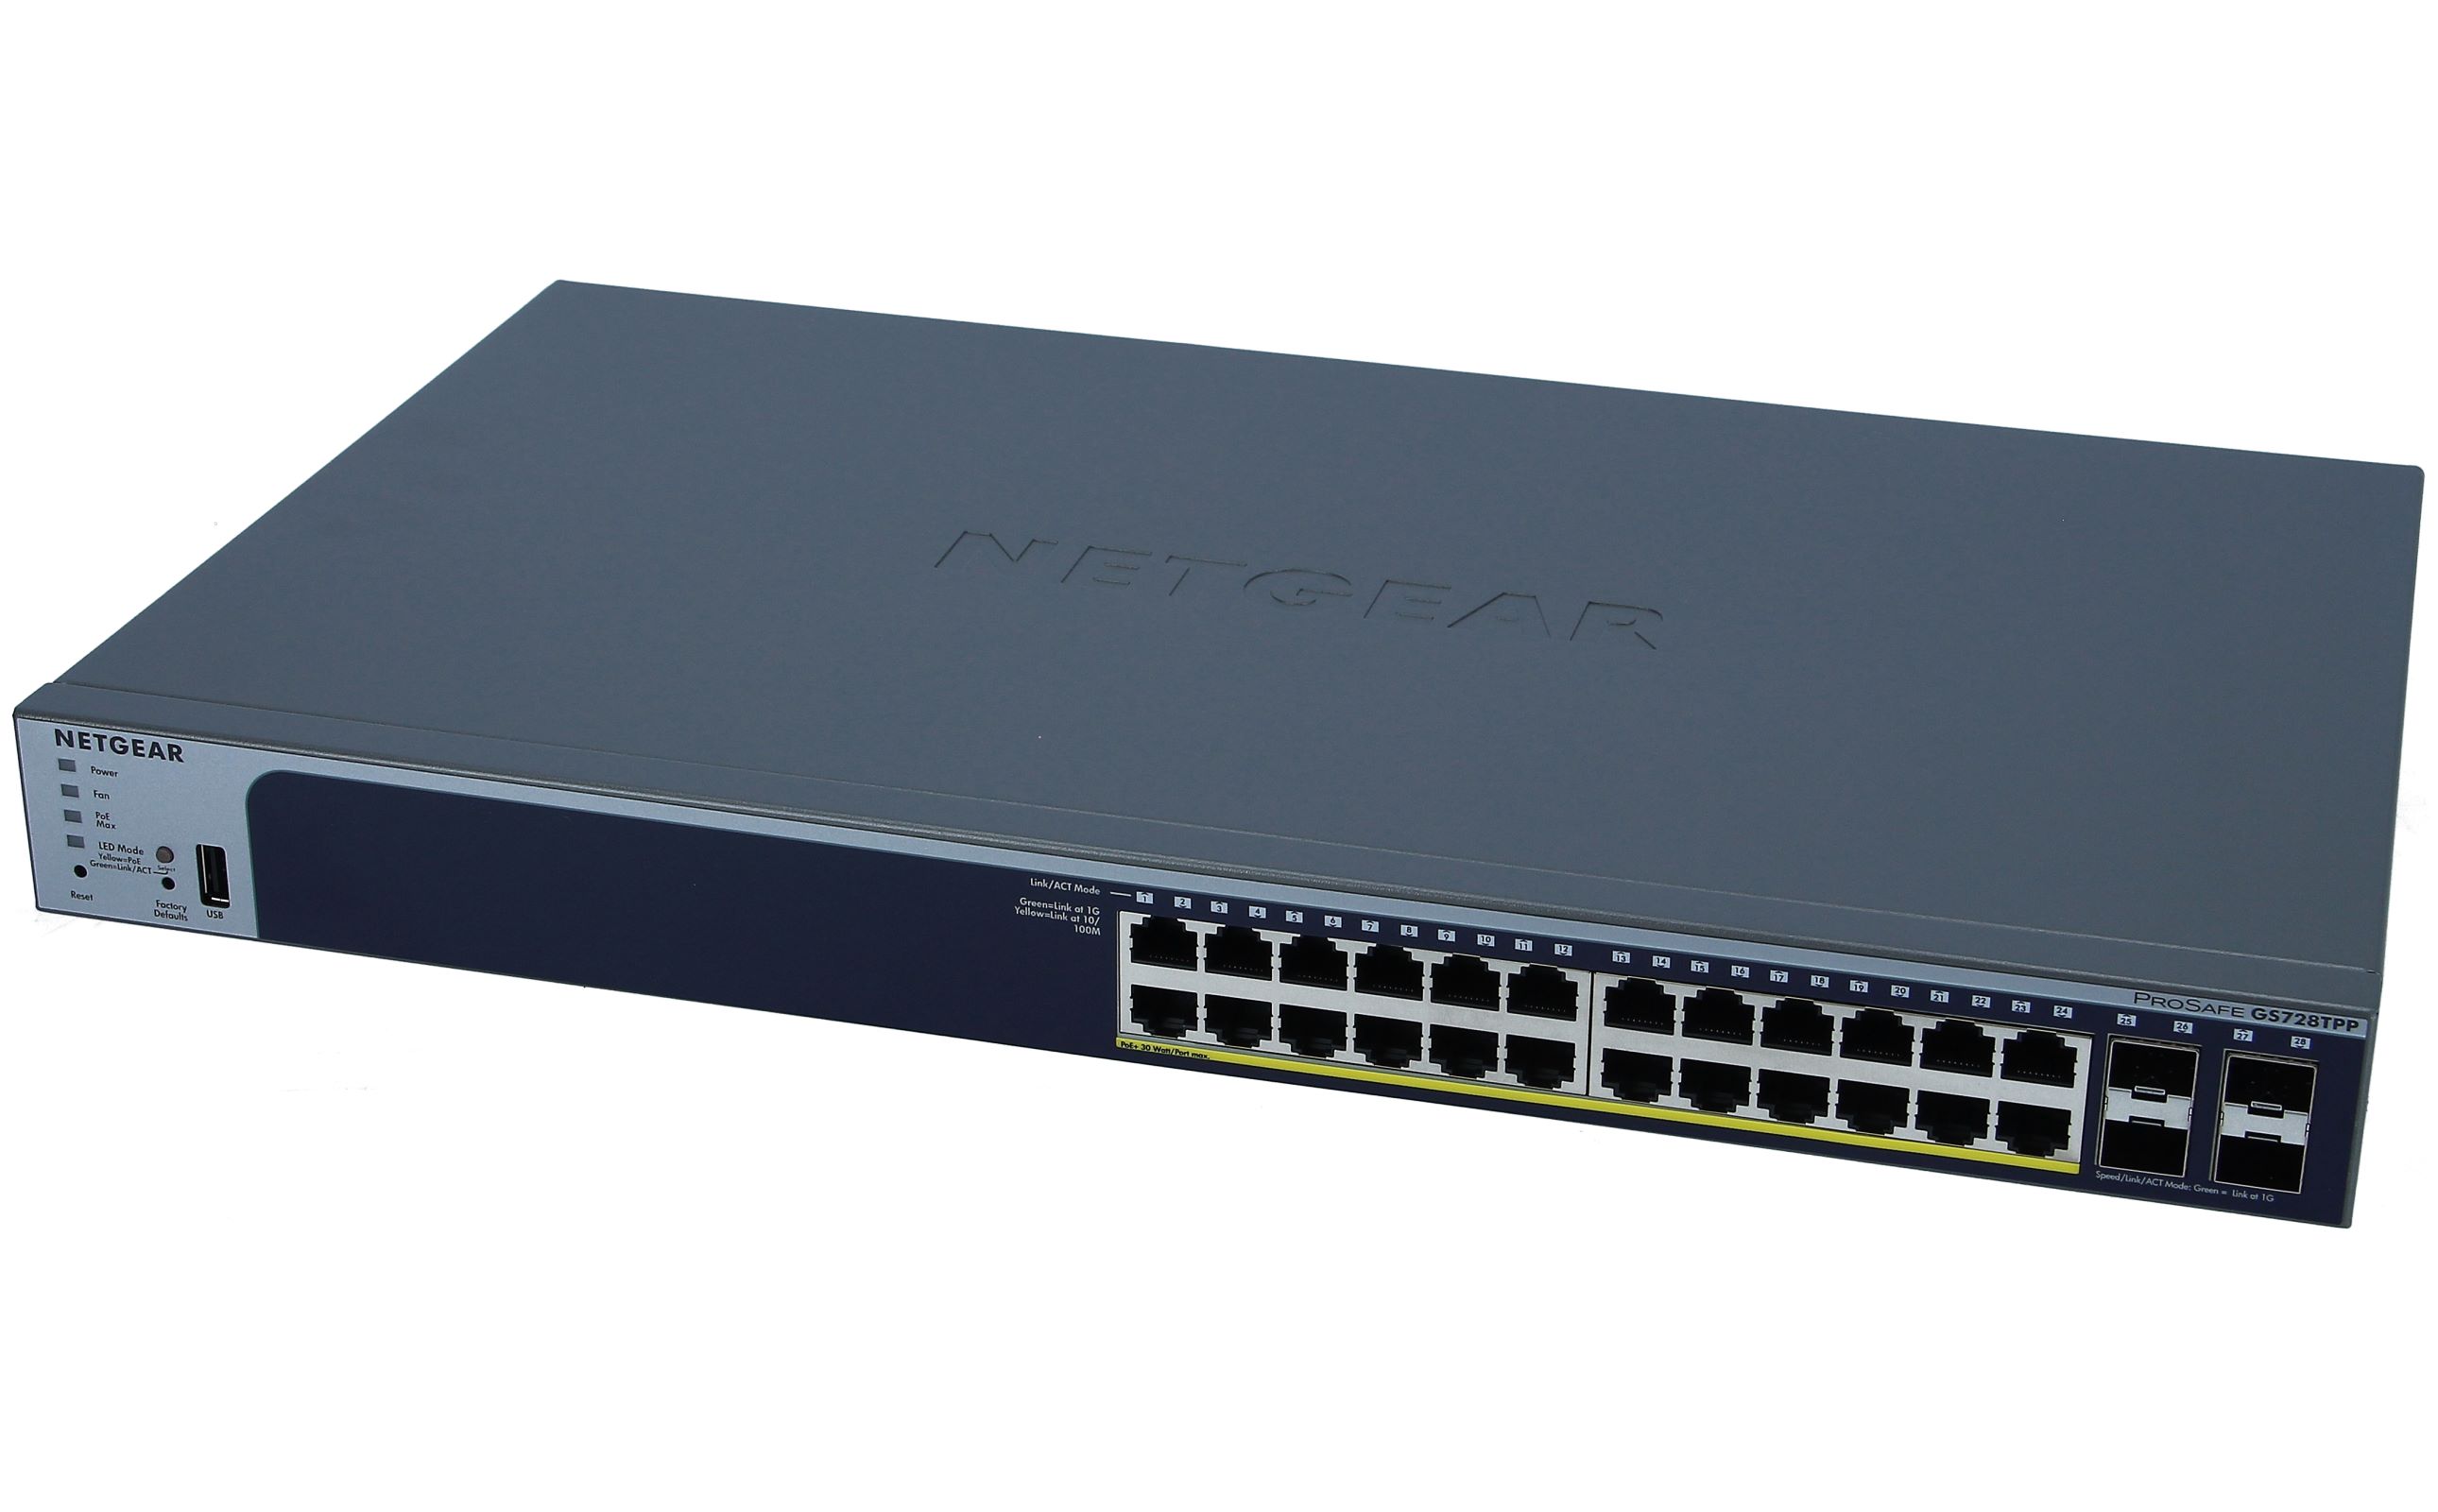 Netgear GS728TP 24-Port Gigabit PoE Smart Managed Switch (GS728TP-200EUS)